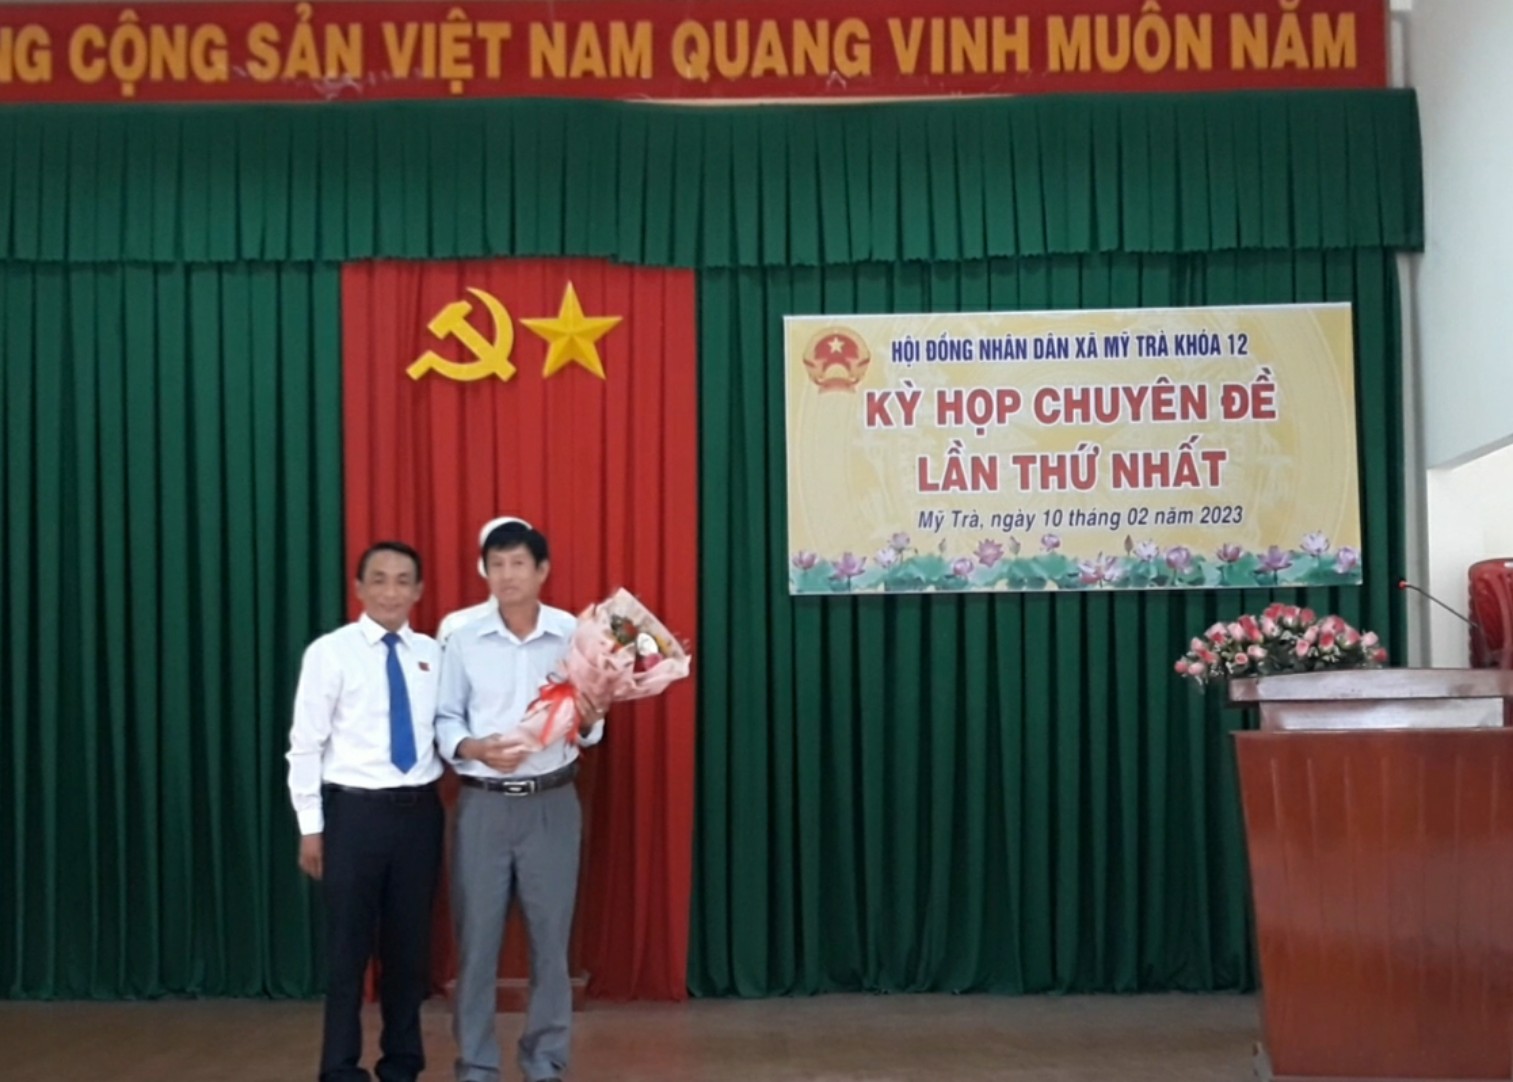 Ông Huỳnh Kim Thuần được bầu làm Chủ tịch Ủy ban nhân dân xã Mỹ Trà, khóa XII, nhiệm kỳ 2021-2026